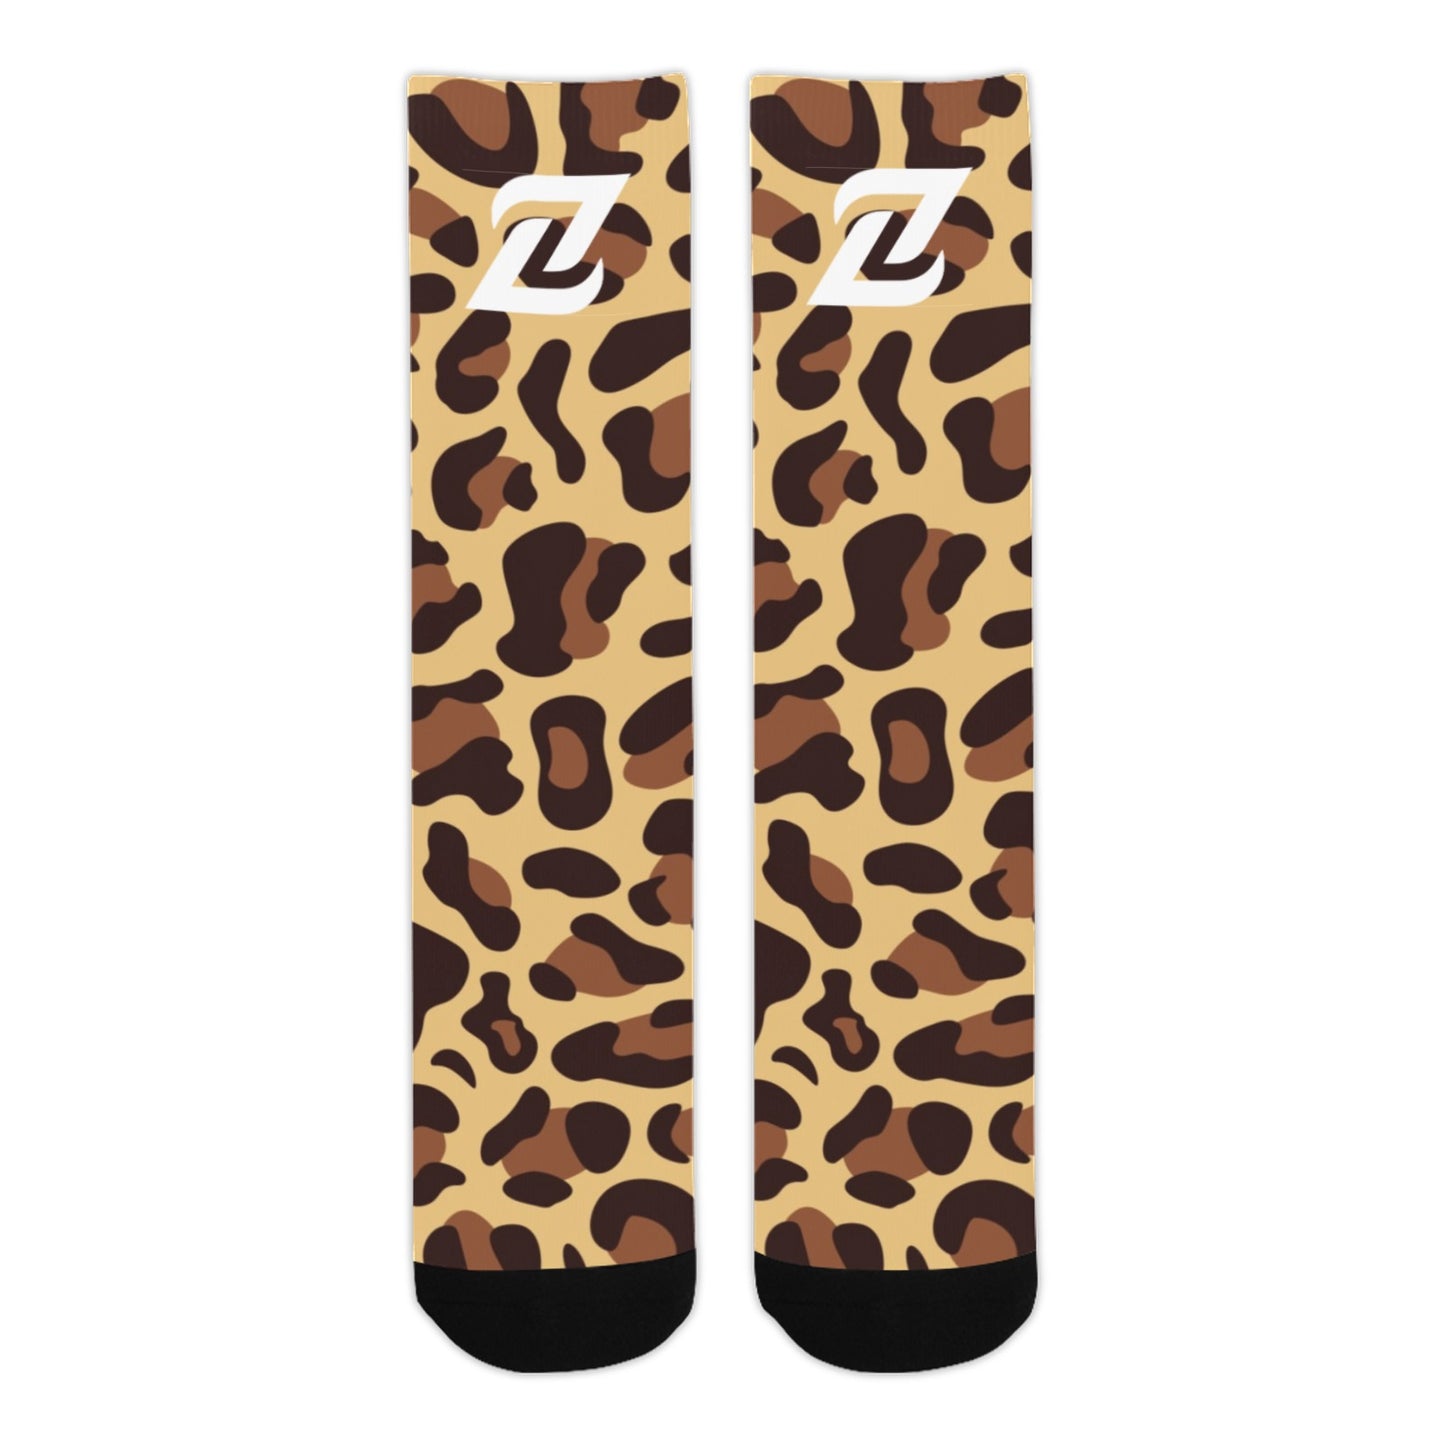 Zen Socks - Leopard Print